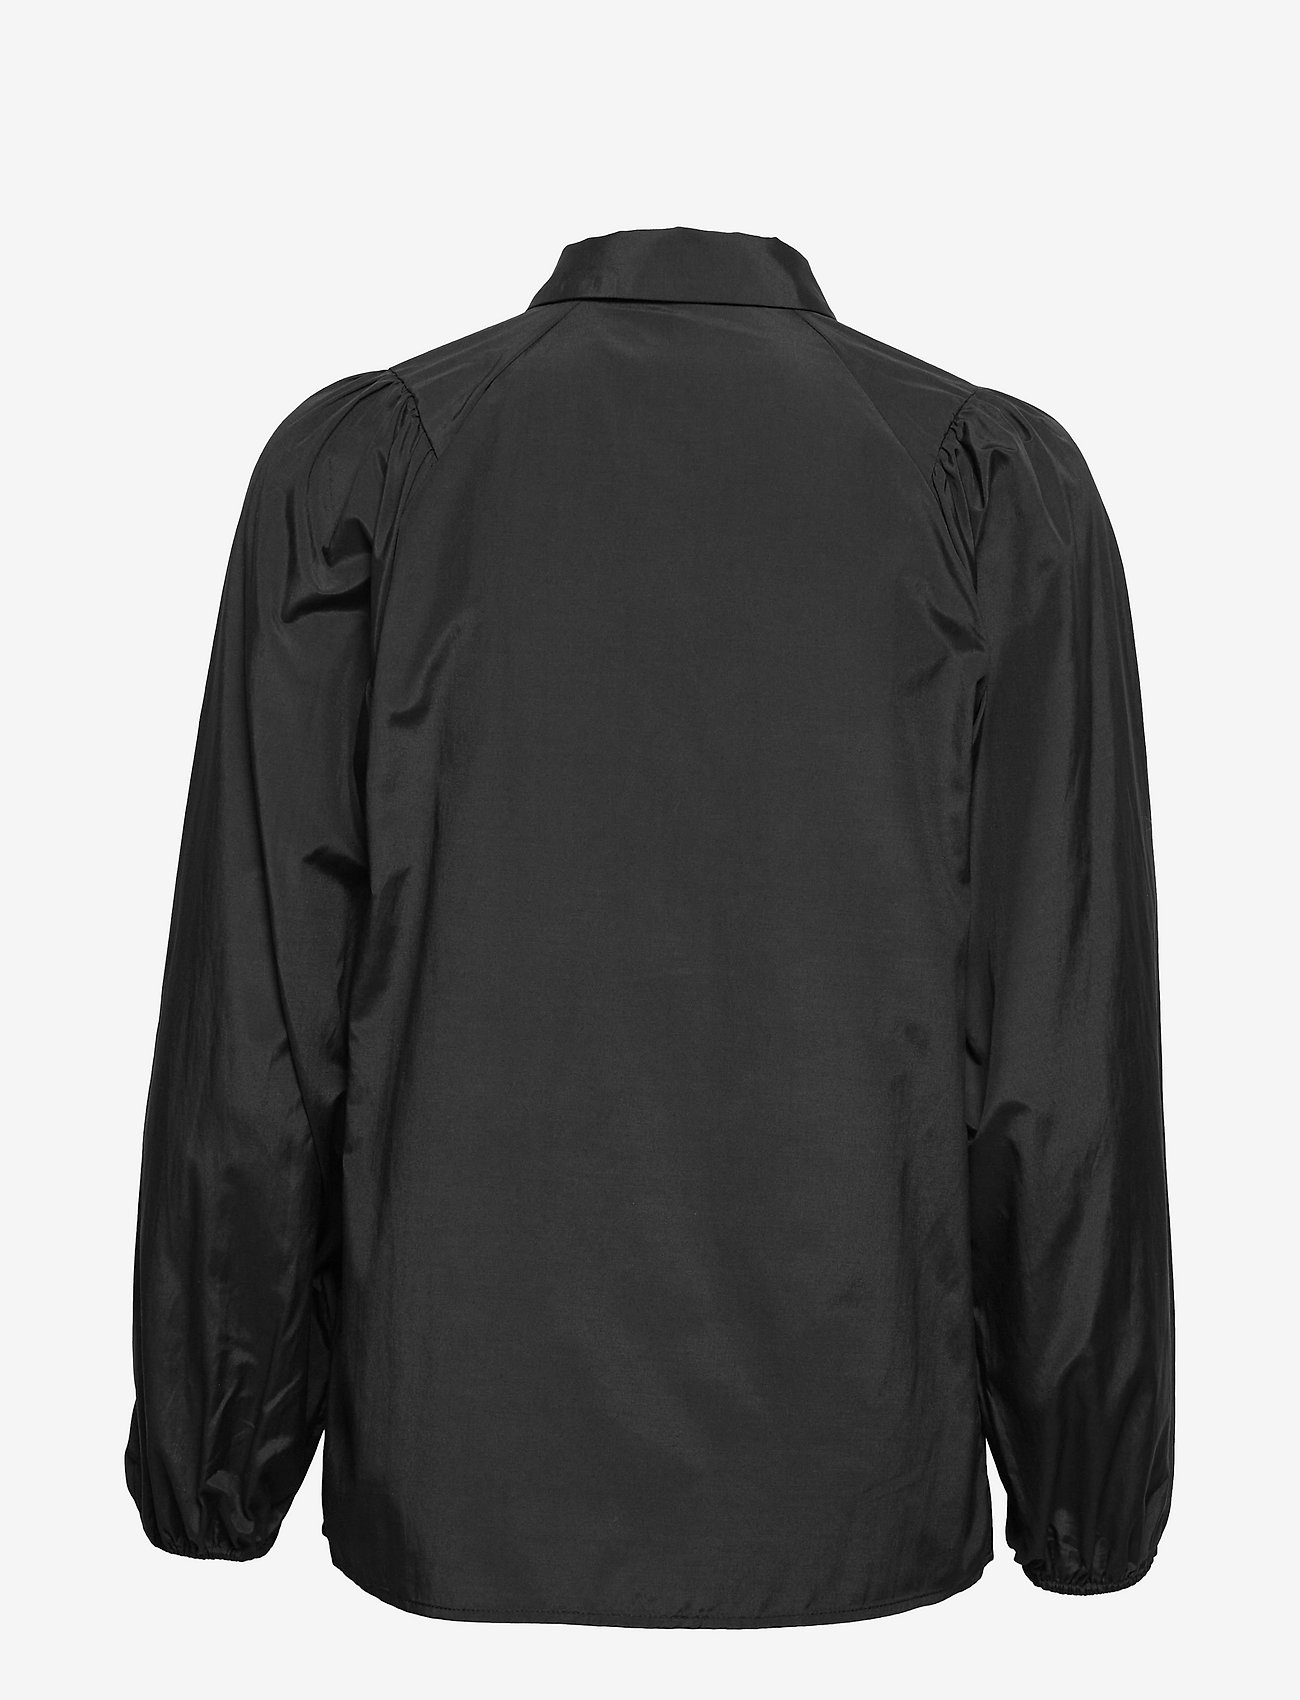 Soyaconcept - SC-TOKYO - marškiniai ilgomis rankovėmis - black - 1